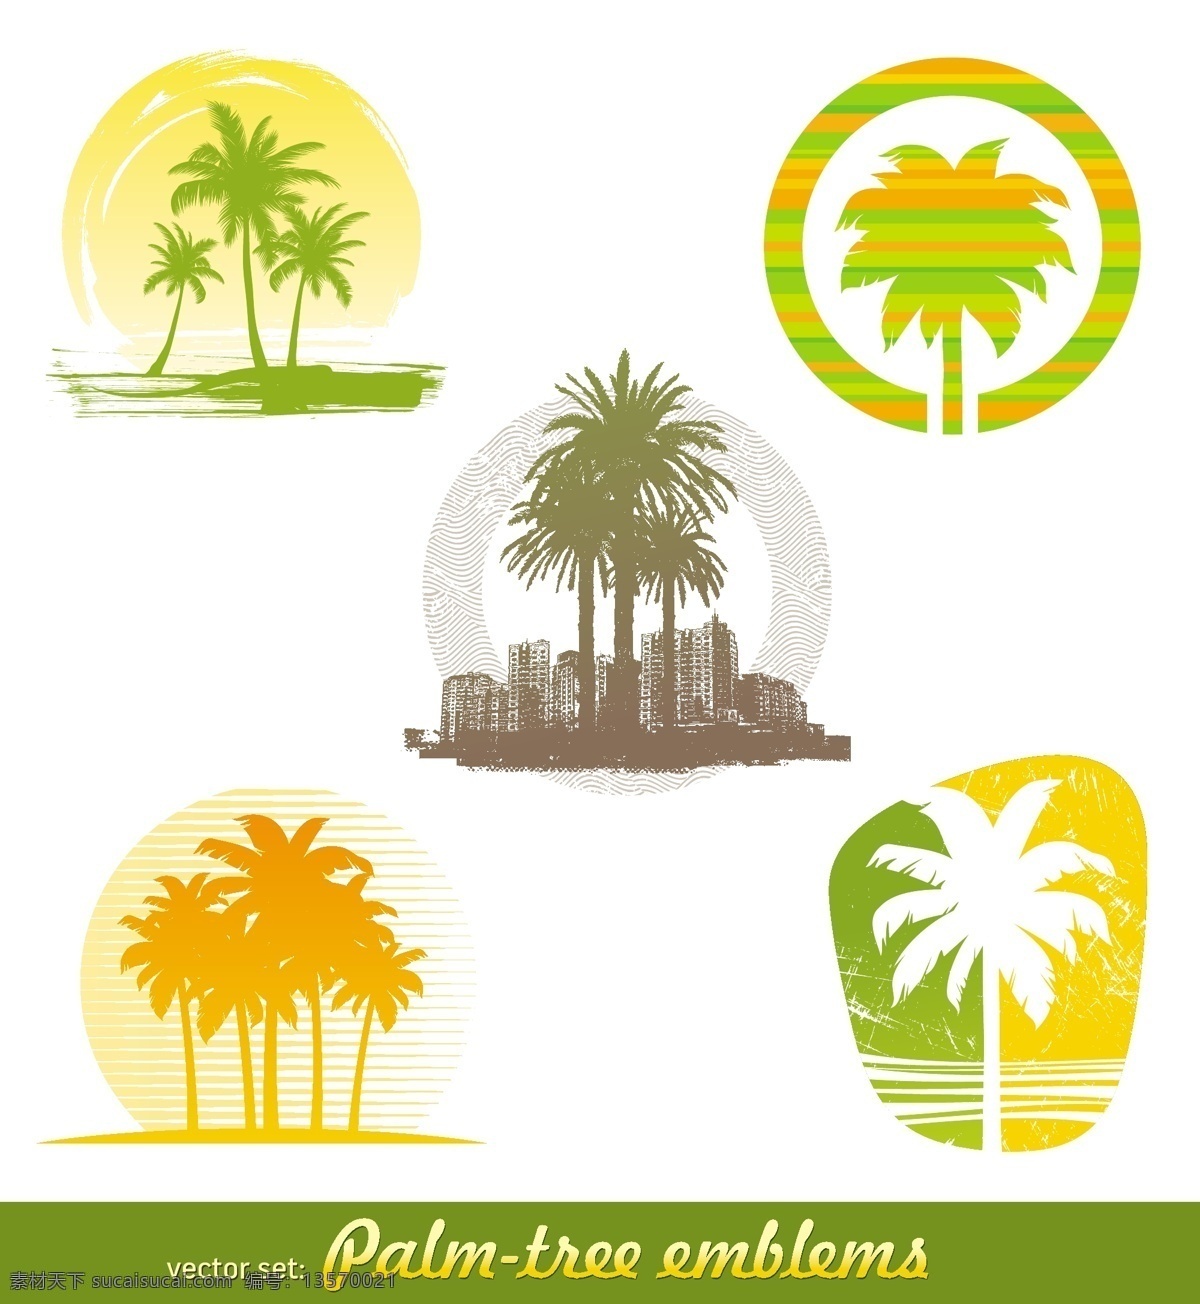 棕榈树 图标 标志 城市 热带树木 划痕 矢量素材 矢量图标 logo 标识标志图标 矢量